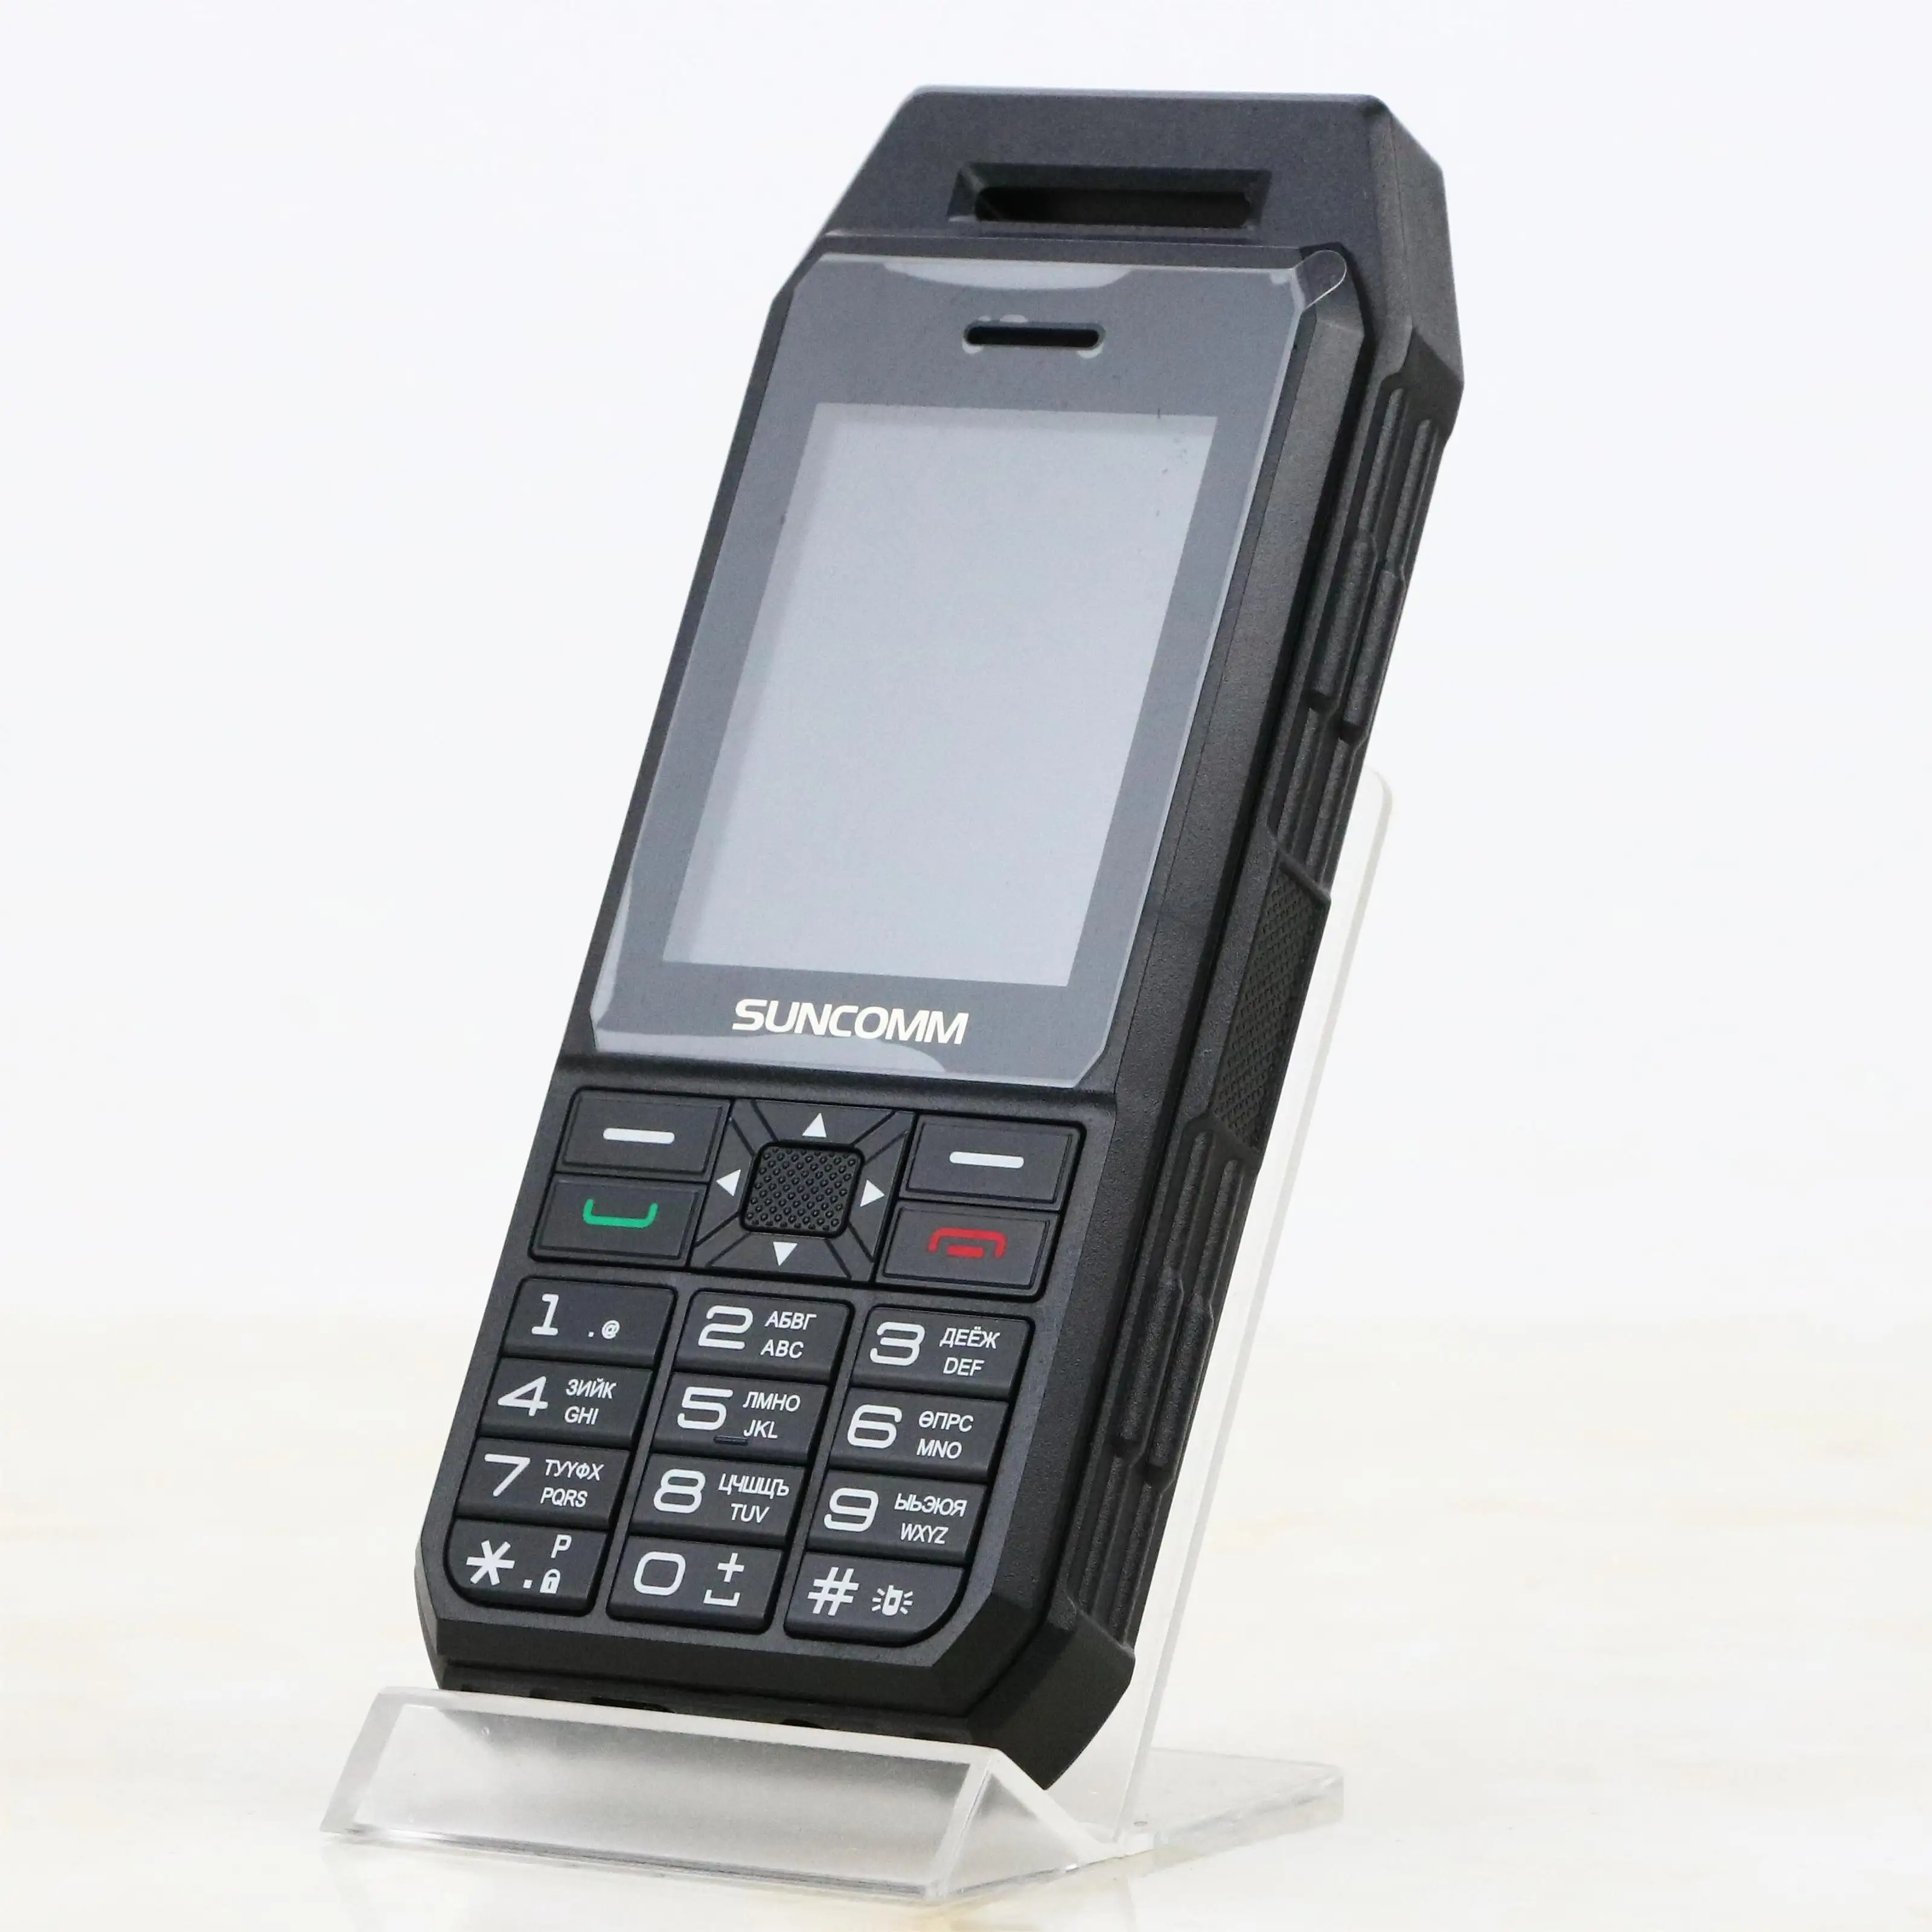 CDMA 450 МГц SUNCOMM SC680 Поддержка фотографии долгий режим ожидания большой динамик три защиты дизайн клавиши телефон